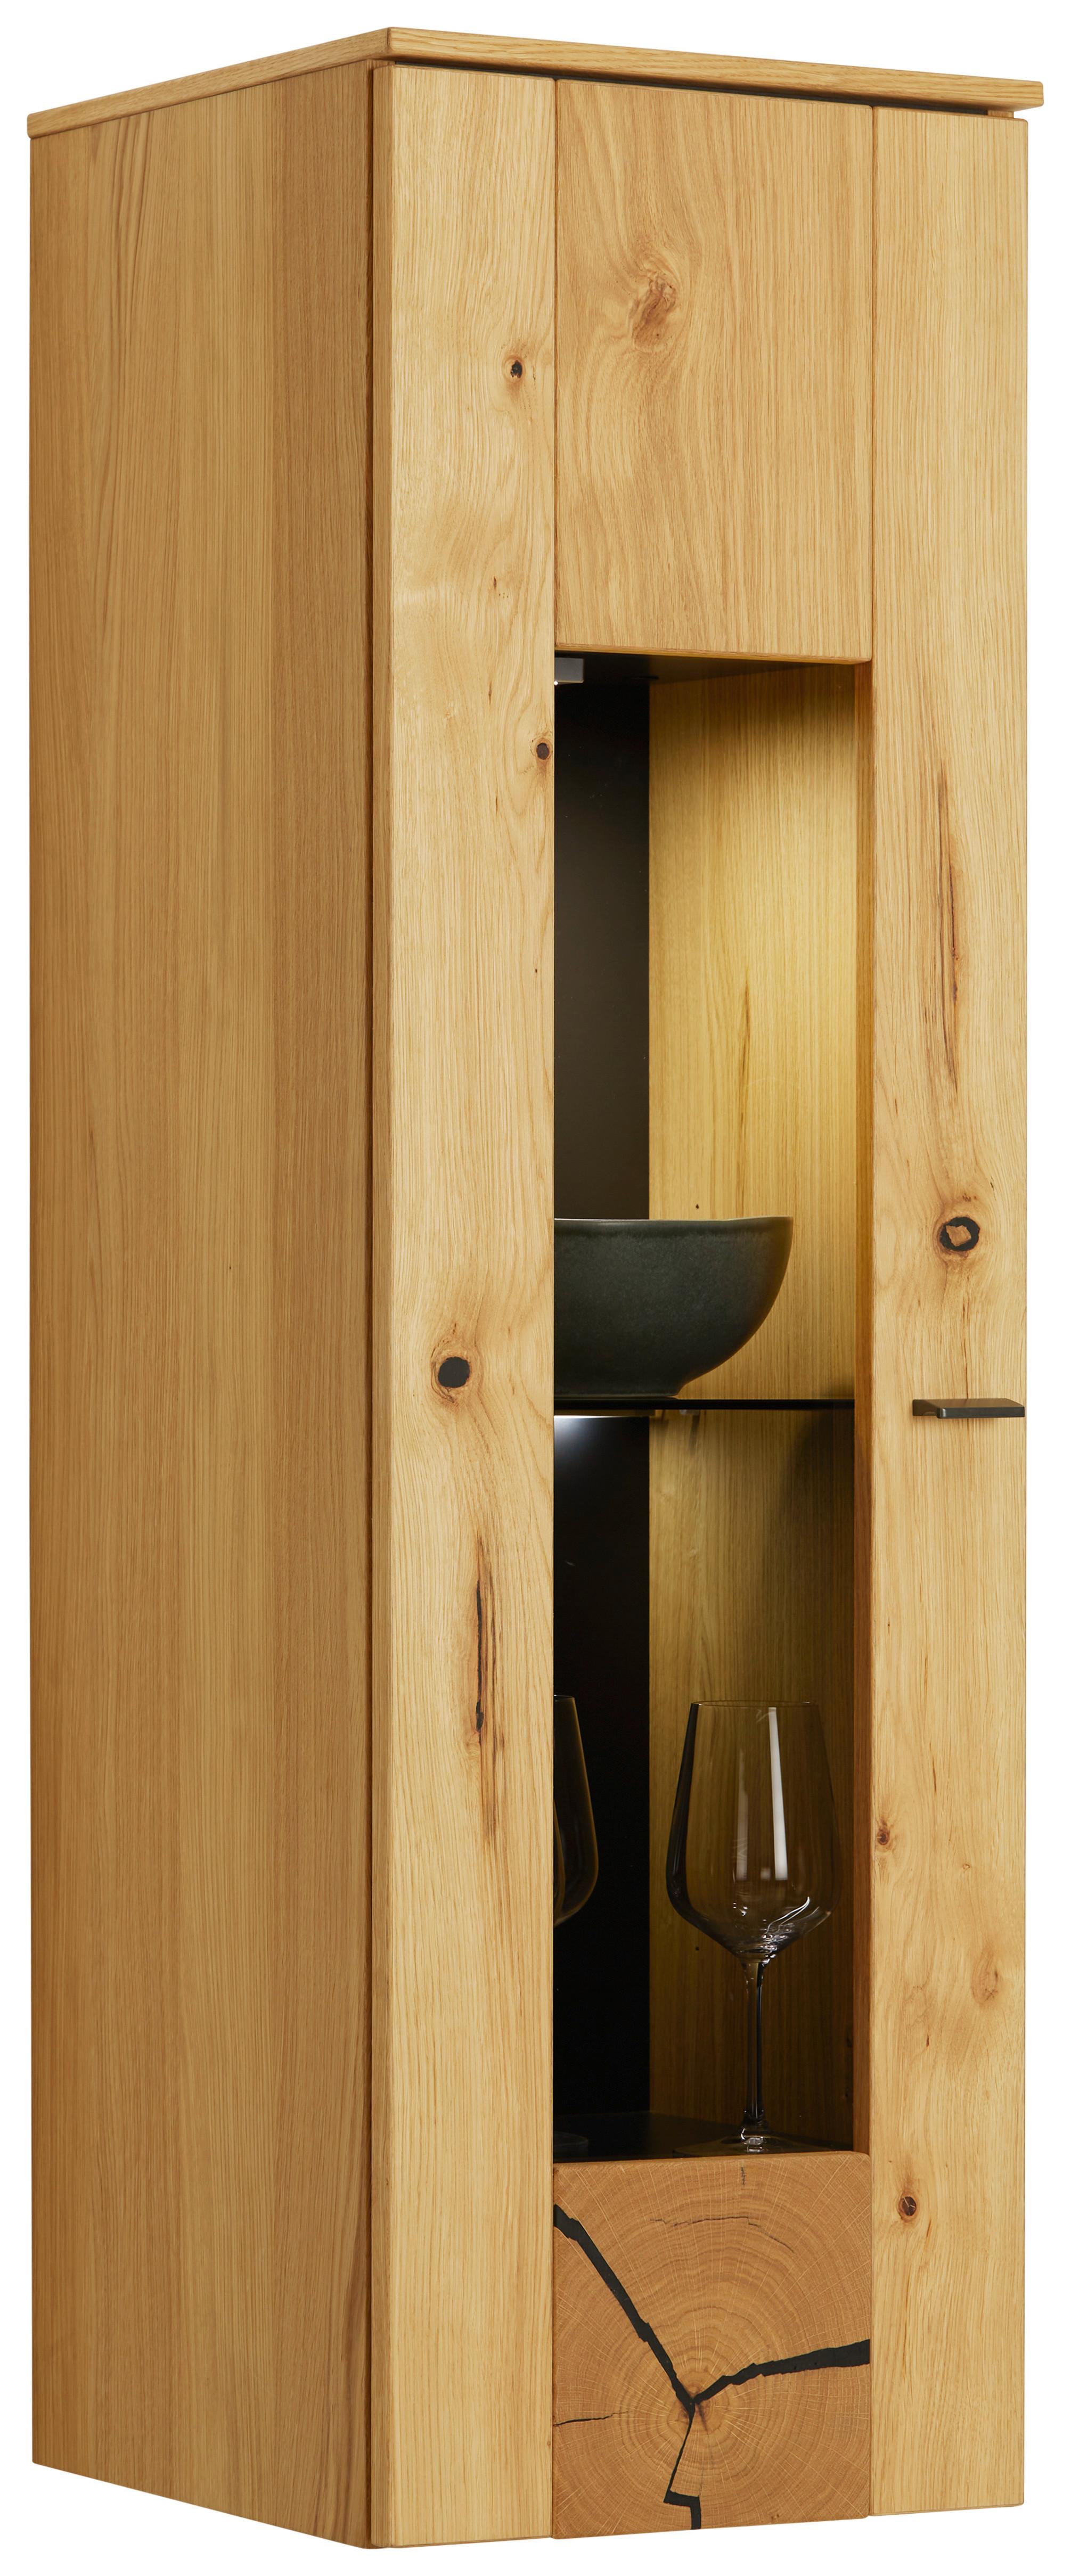 Závesná Vitrína Stockholm - čierna/farby duba, Moderný, kov/kompozitné drevo (37/119/38cm) - Premium Living